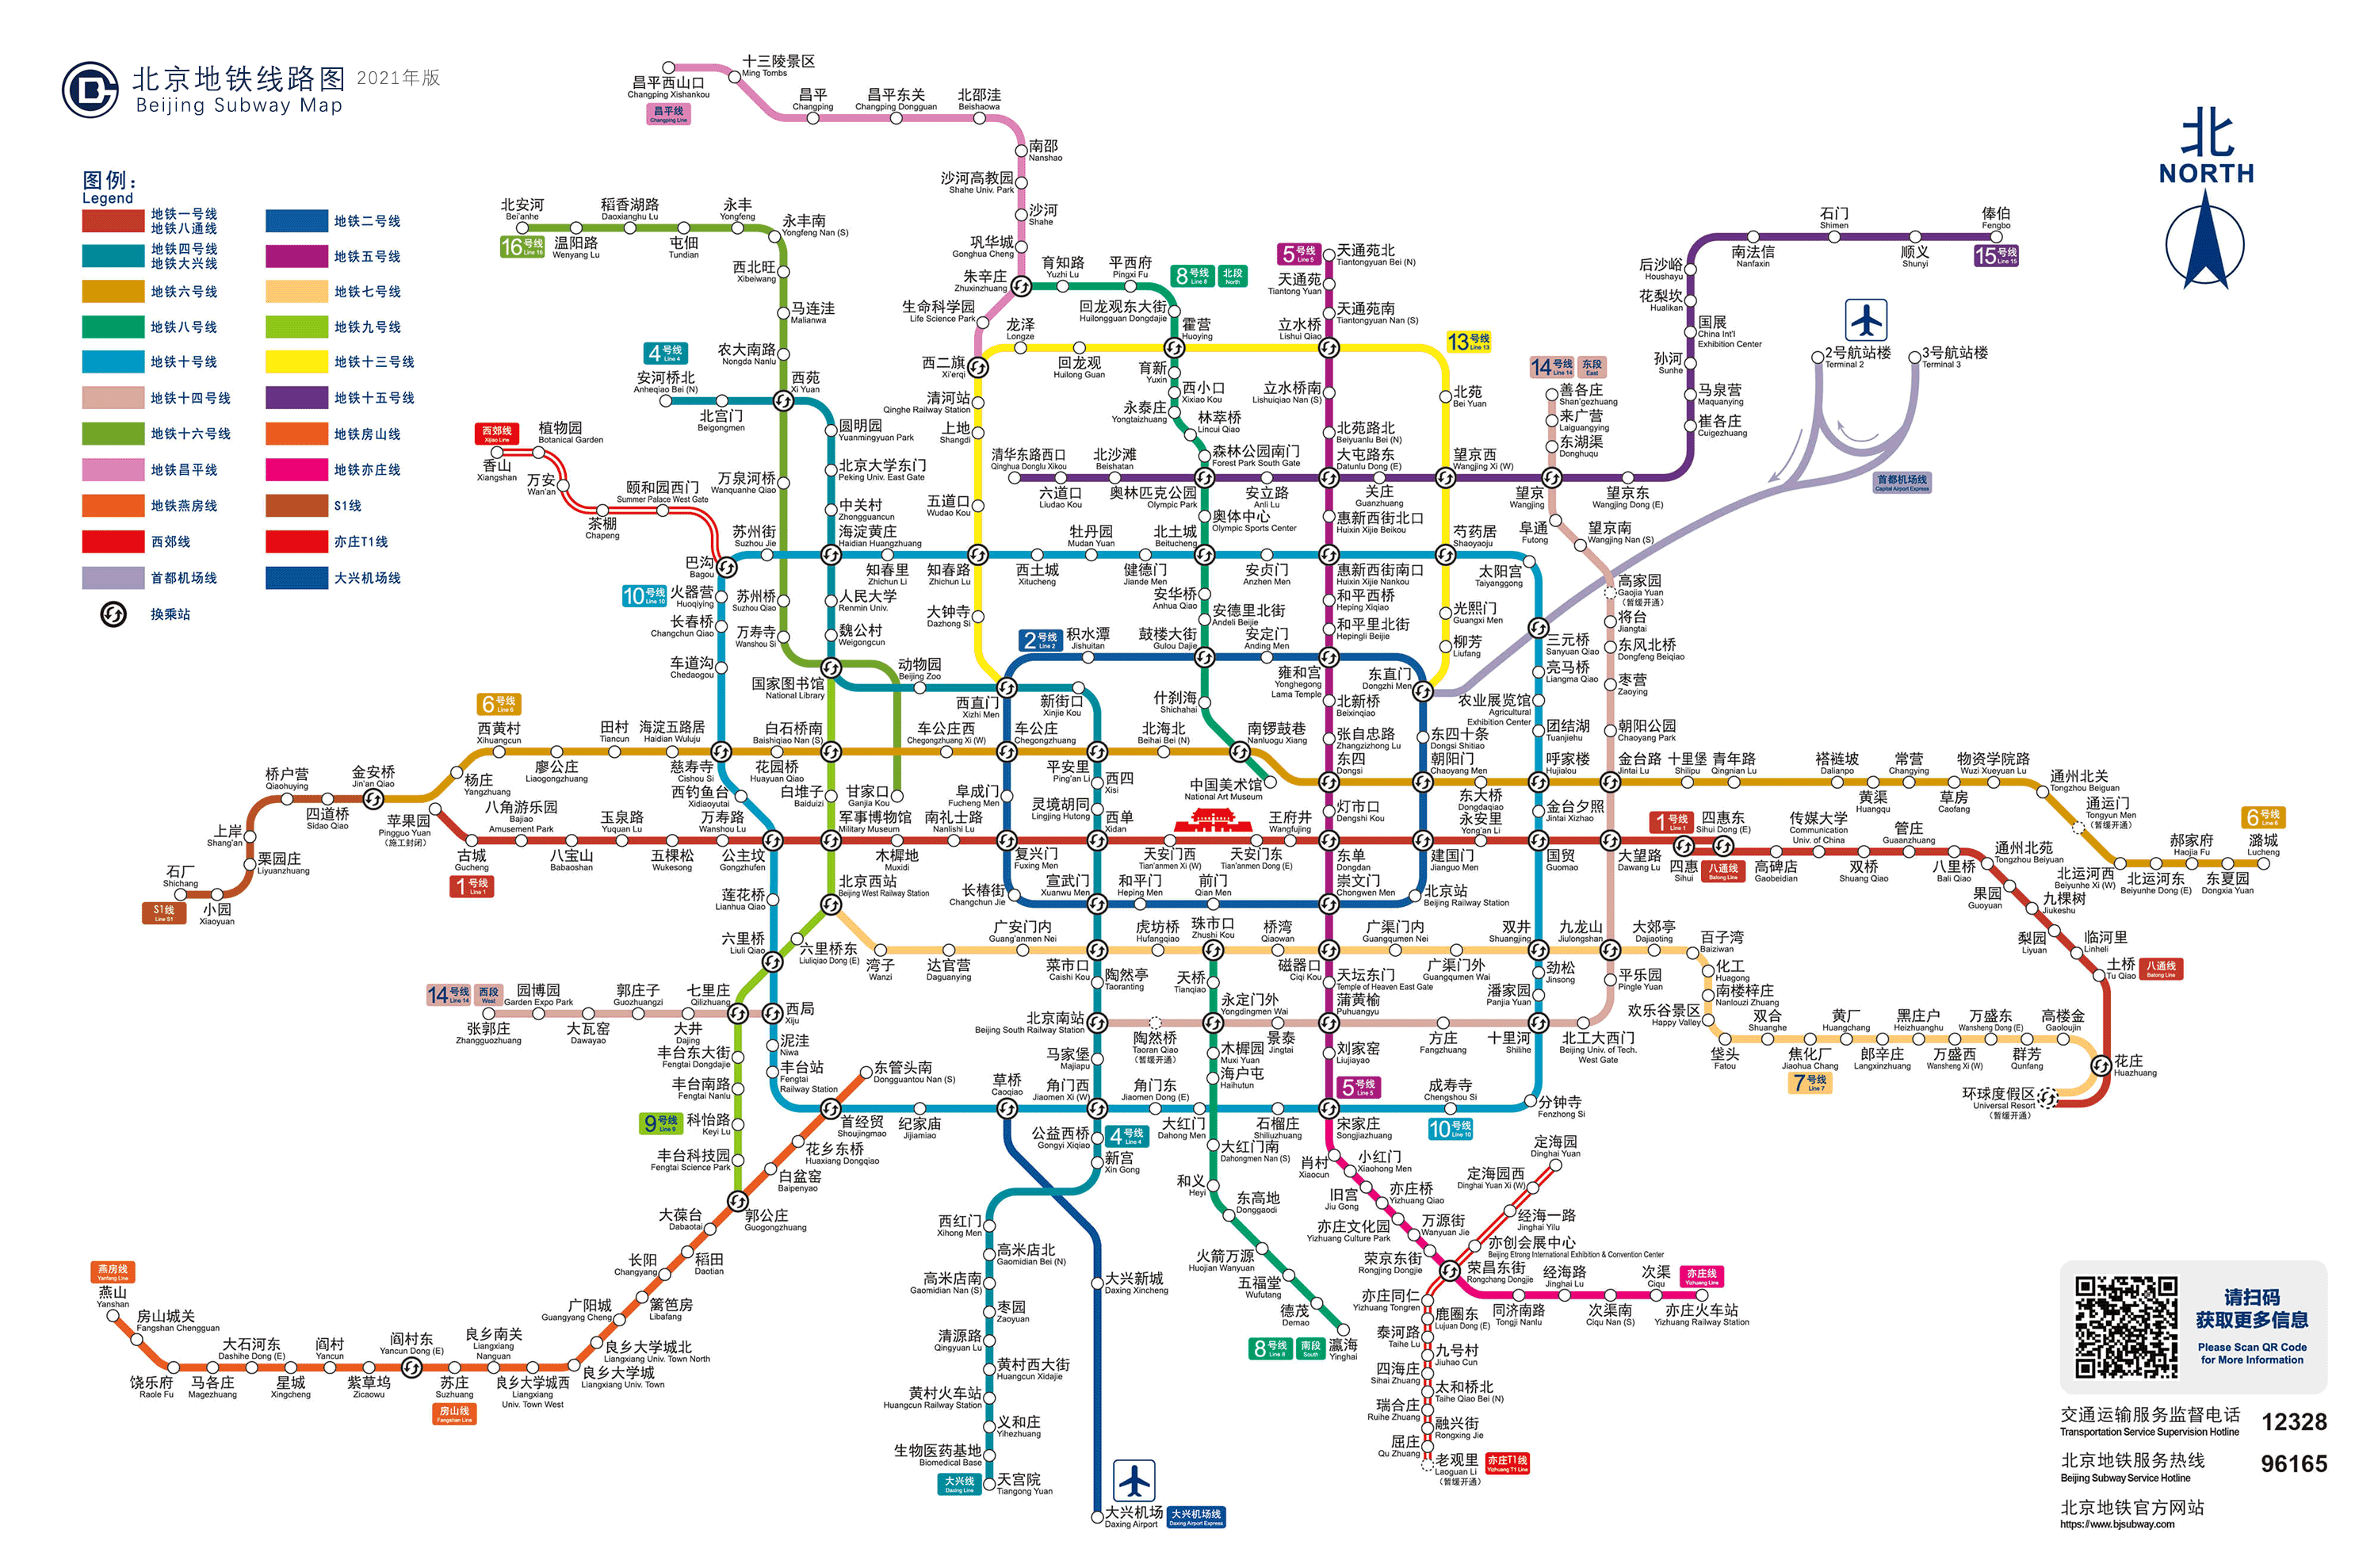 线路图2021年最新版(点击查看清晰大图) 2020年底北京地铁16号线中段